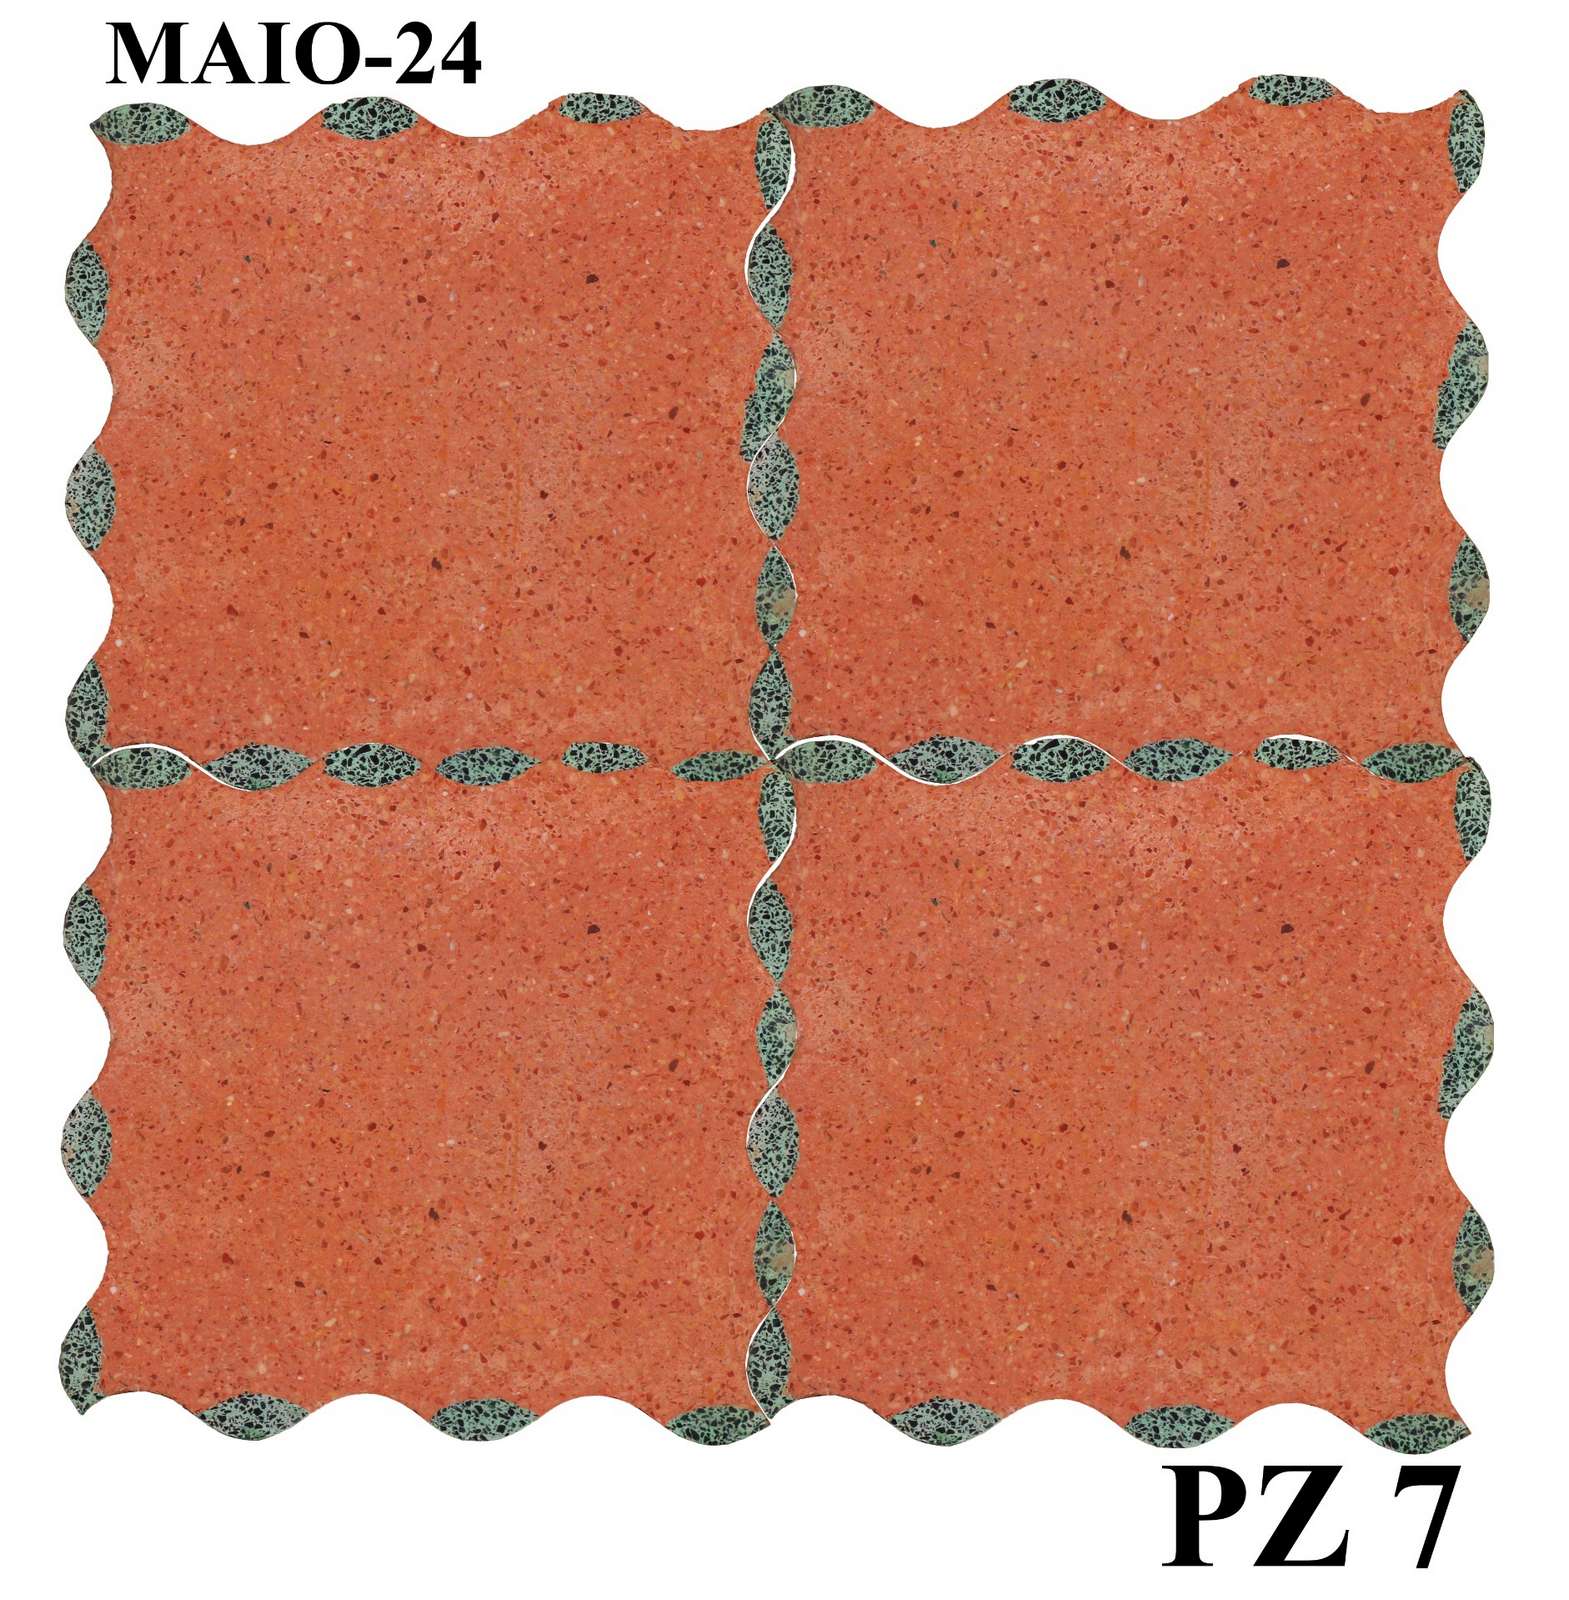 Antica pavimentazione in graniglia. cm 20.5 x 20.5. - Cementine e Graniglie - Pavimentazioni Antiche - Prodotti - Antichità Fiorillo